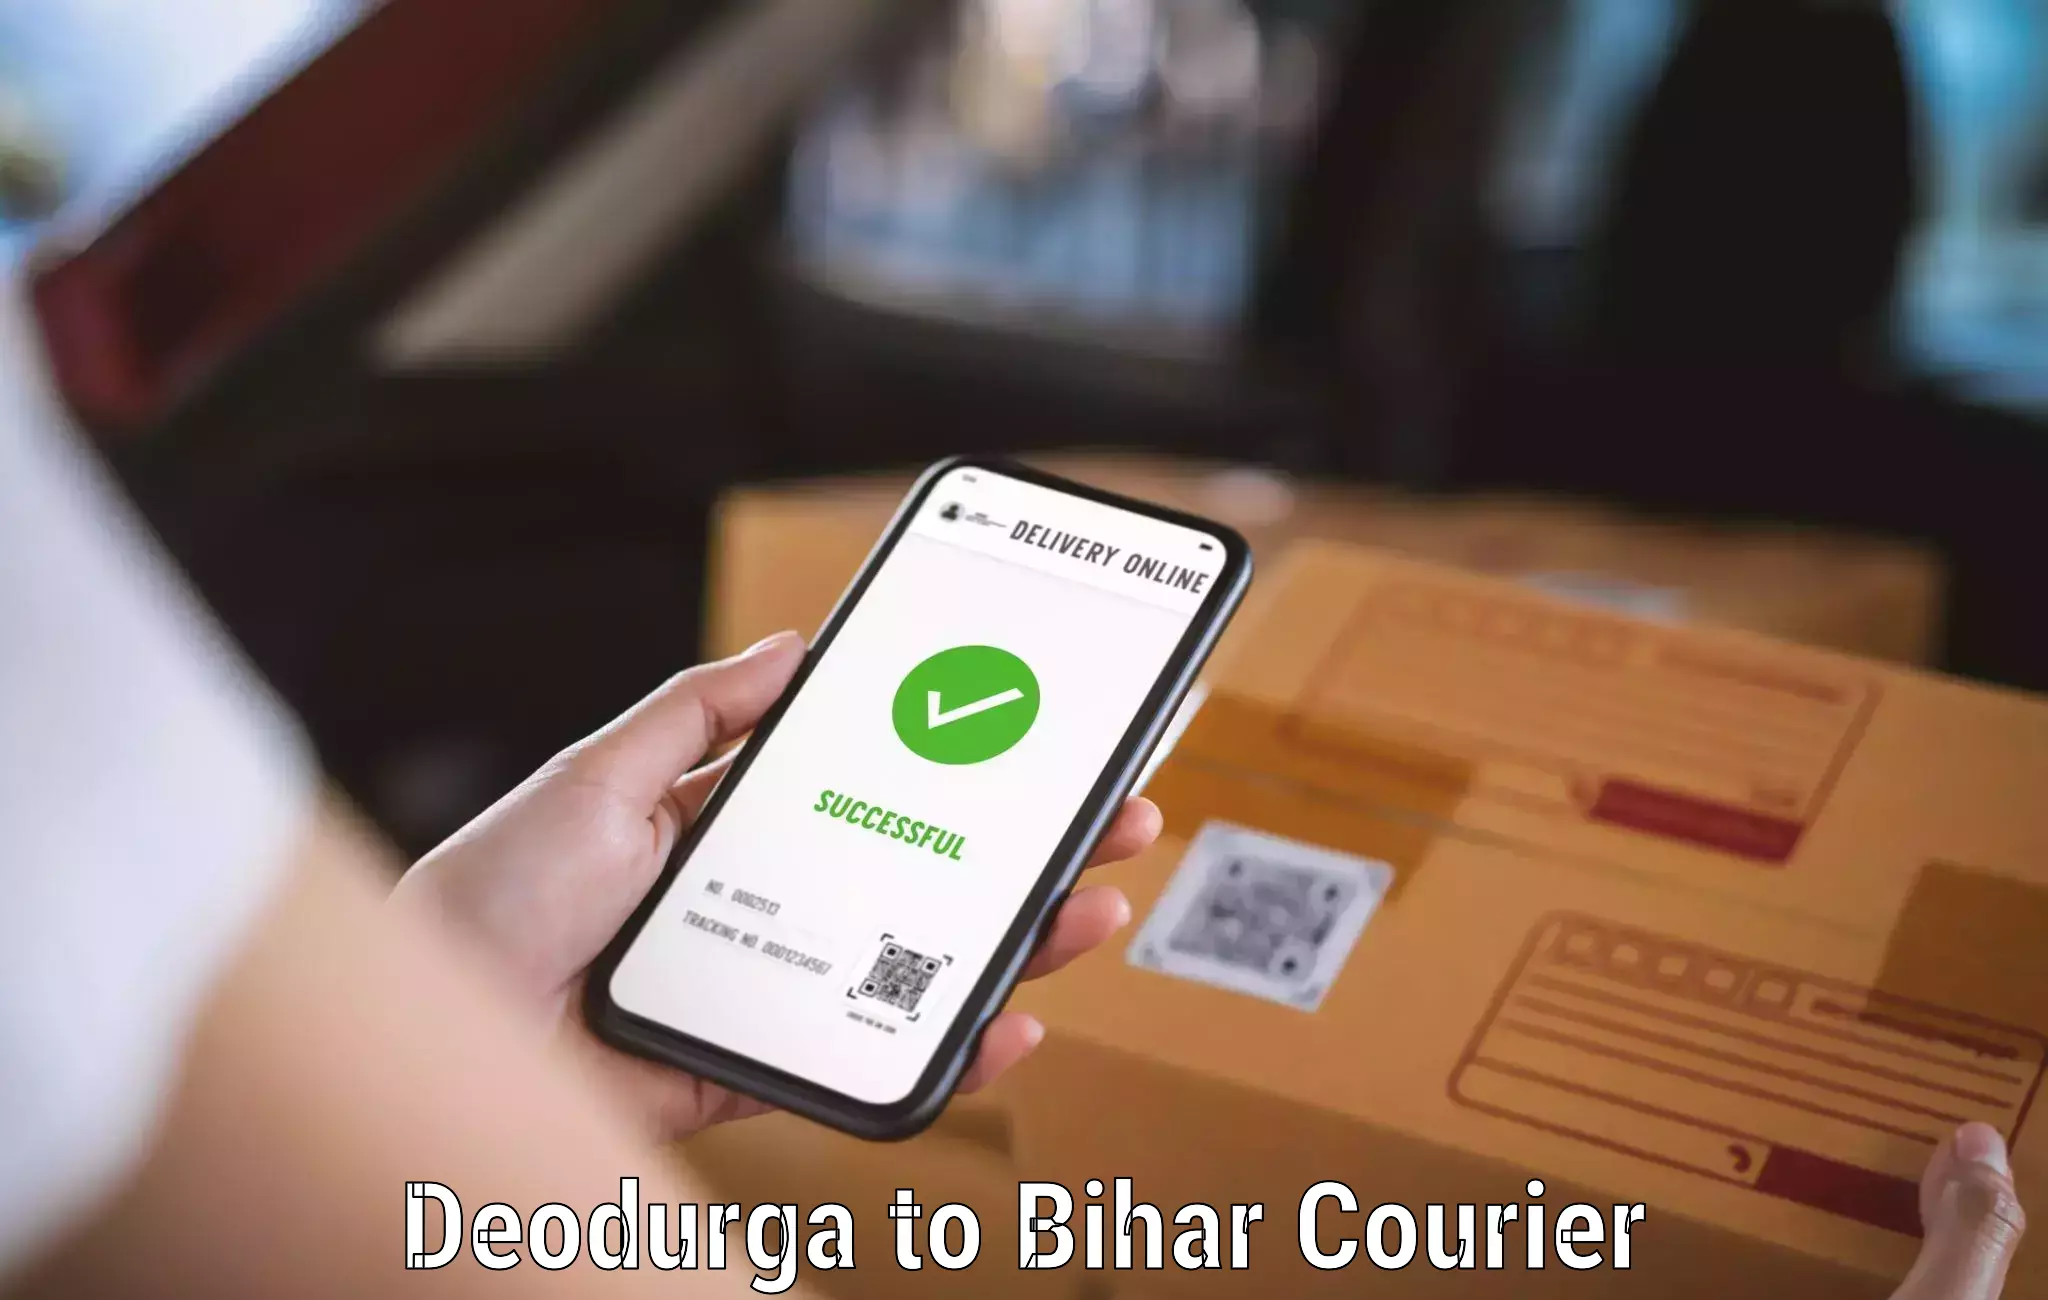 Quick courier services in Deodurga to Tribeniganj